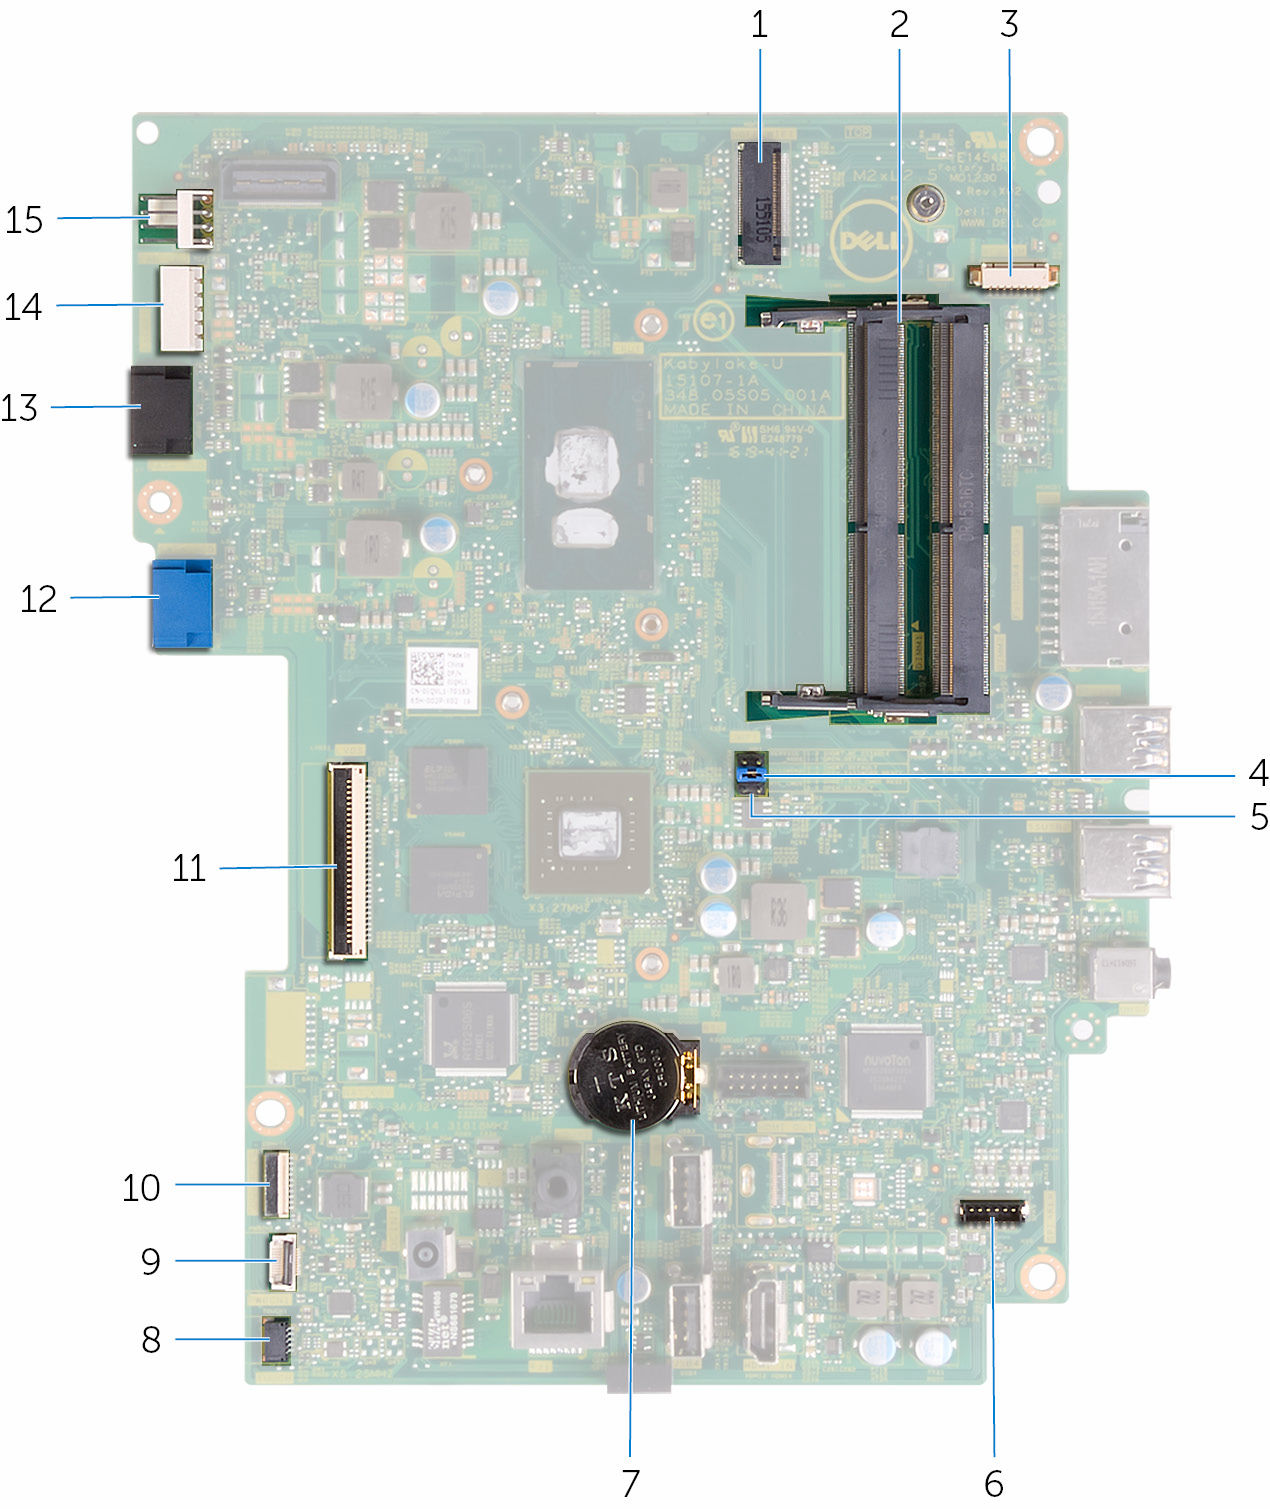 1 kablosuz kart yuvası (NGFF_WI-FI) 2 bellek modülü yuvaları (2) 3 kamera kablosu konnektörü (WEBCAM) 4 CMOS temizleme atlatıcısı